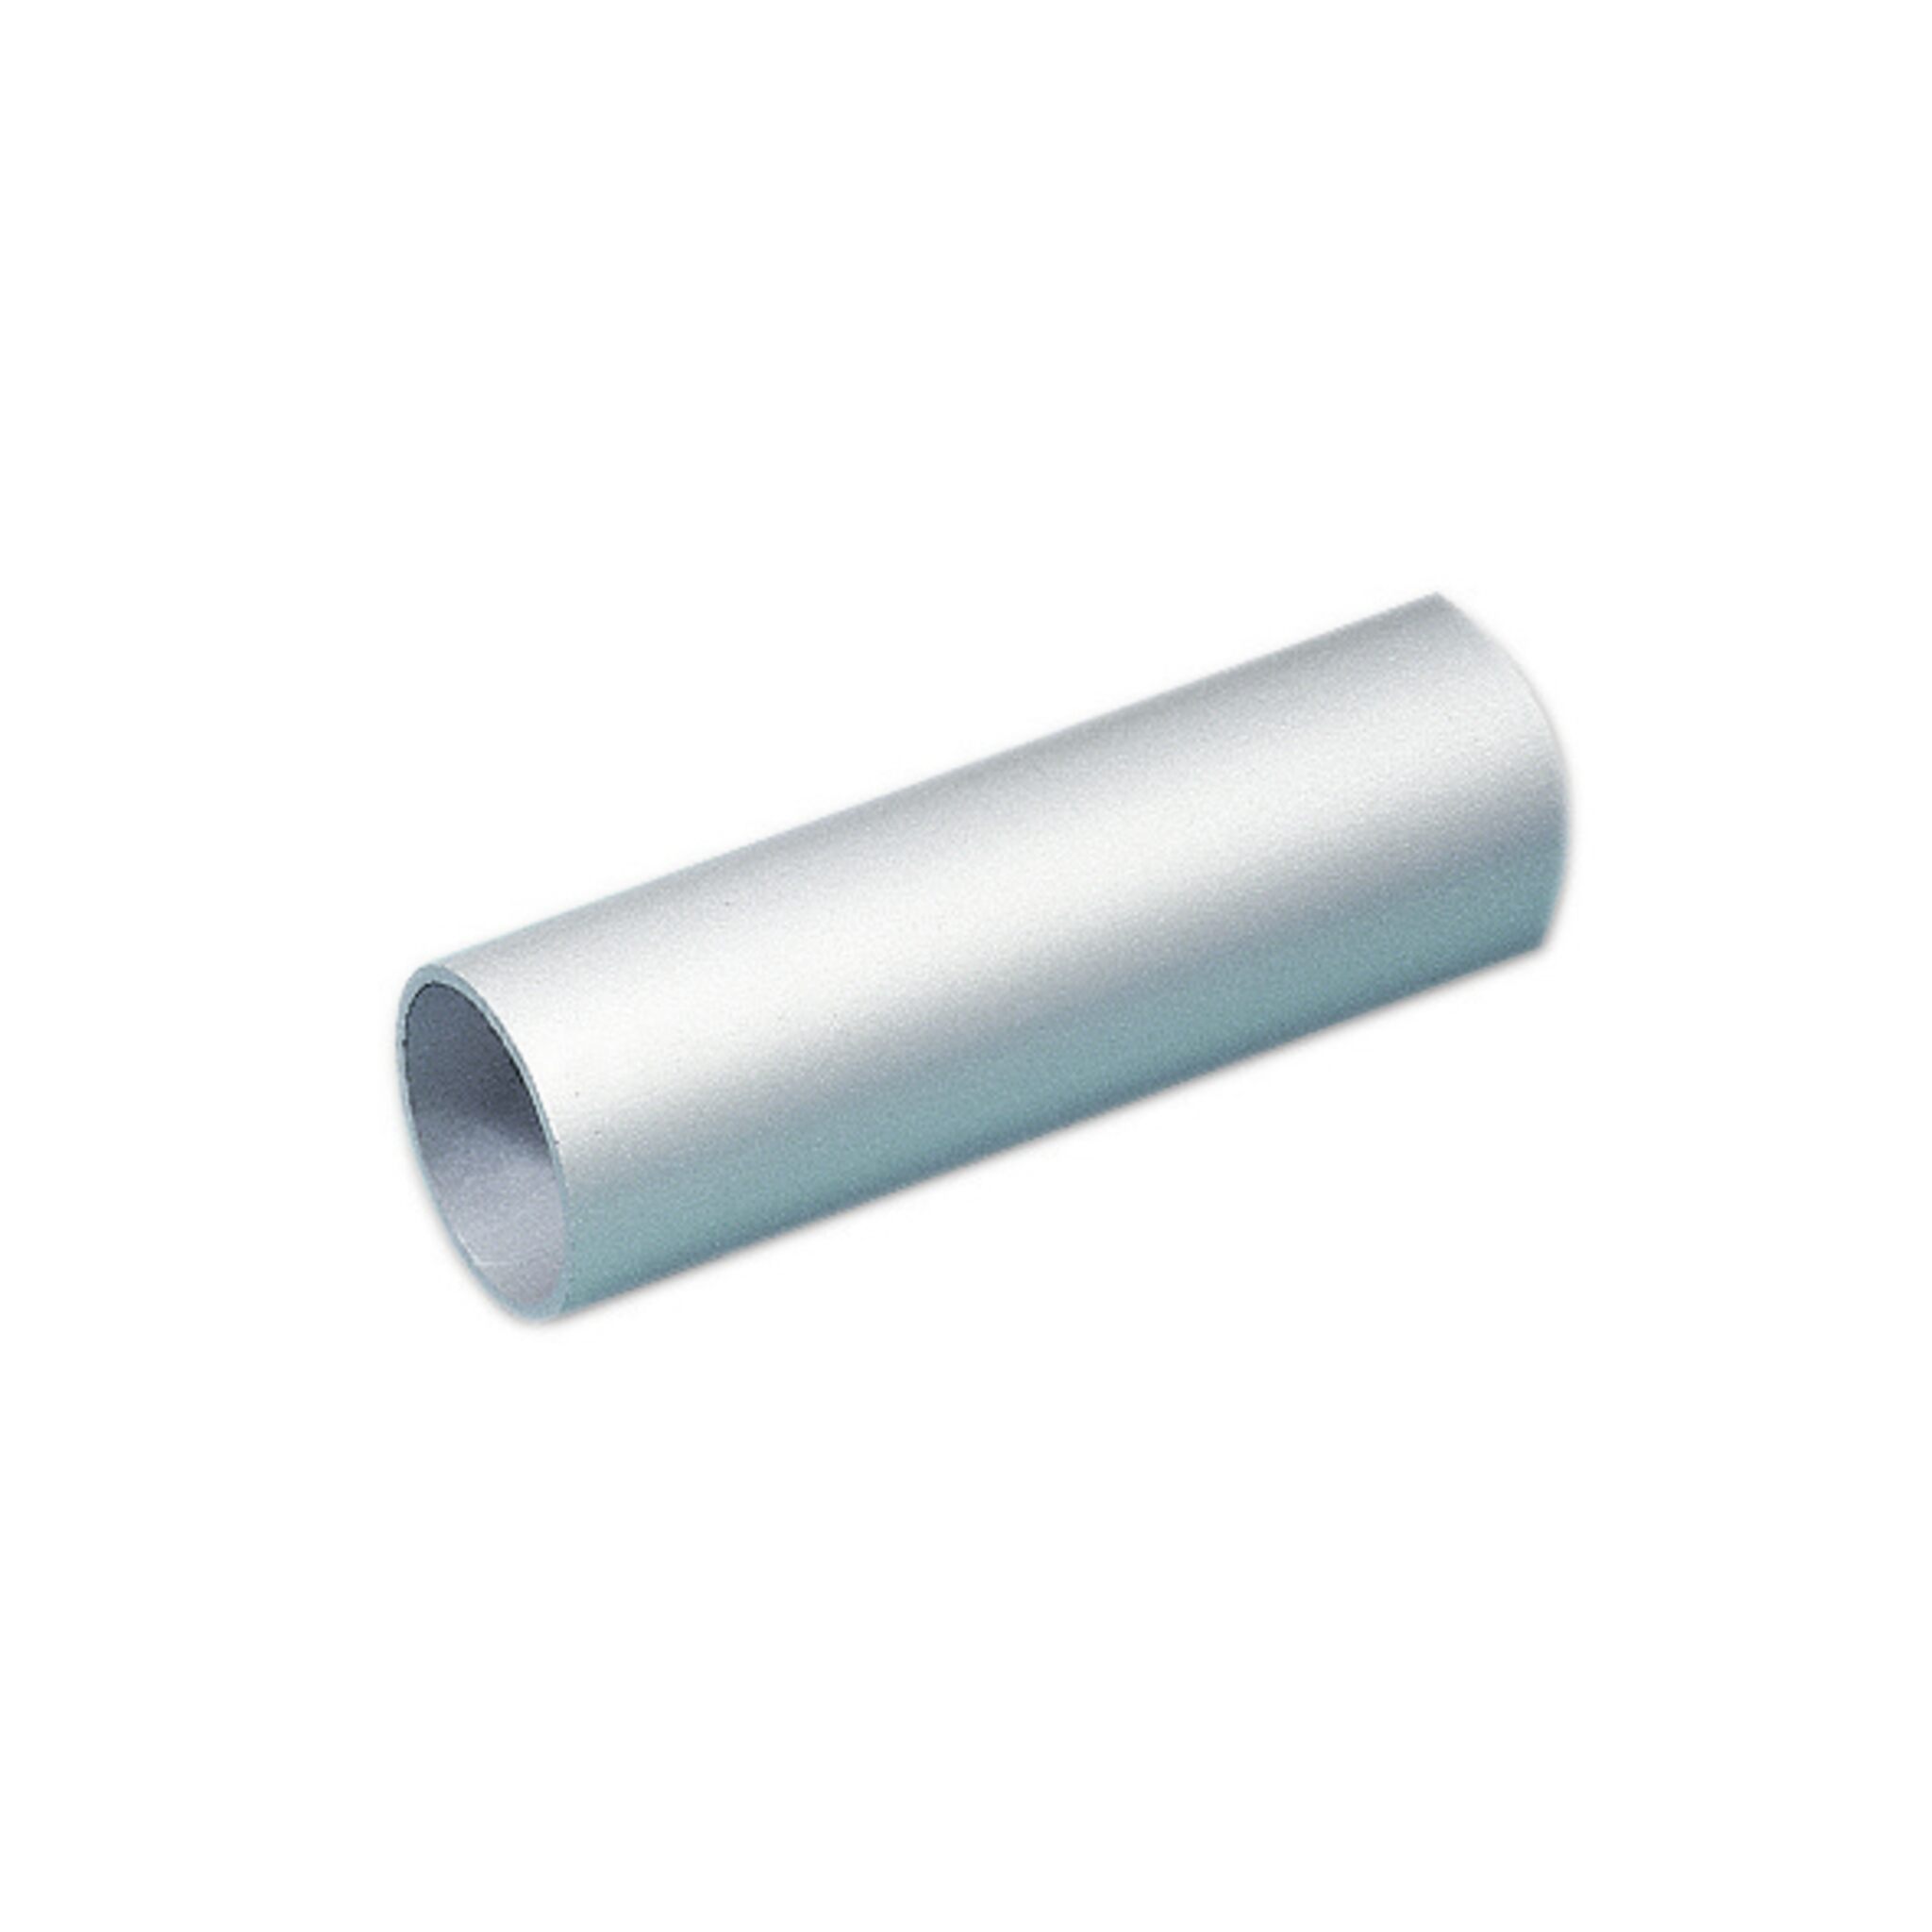 Aluminium-Rohr für Handlaufbeschläge (40 x 2)